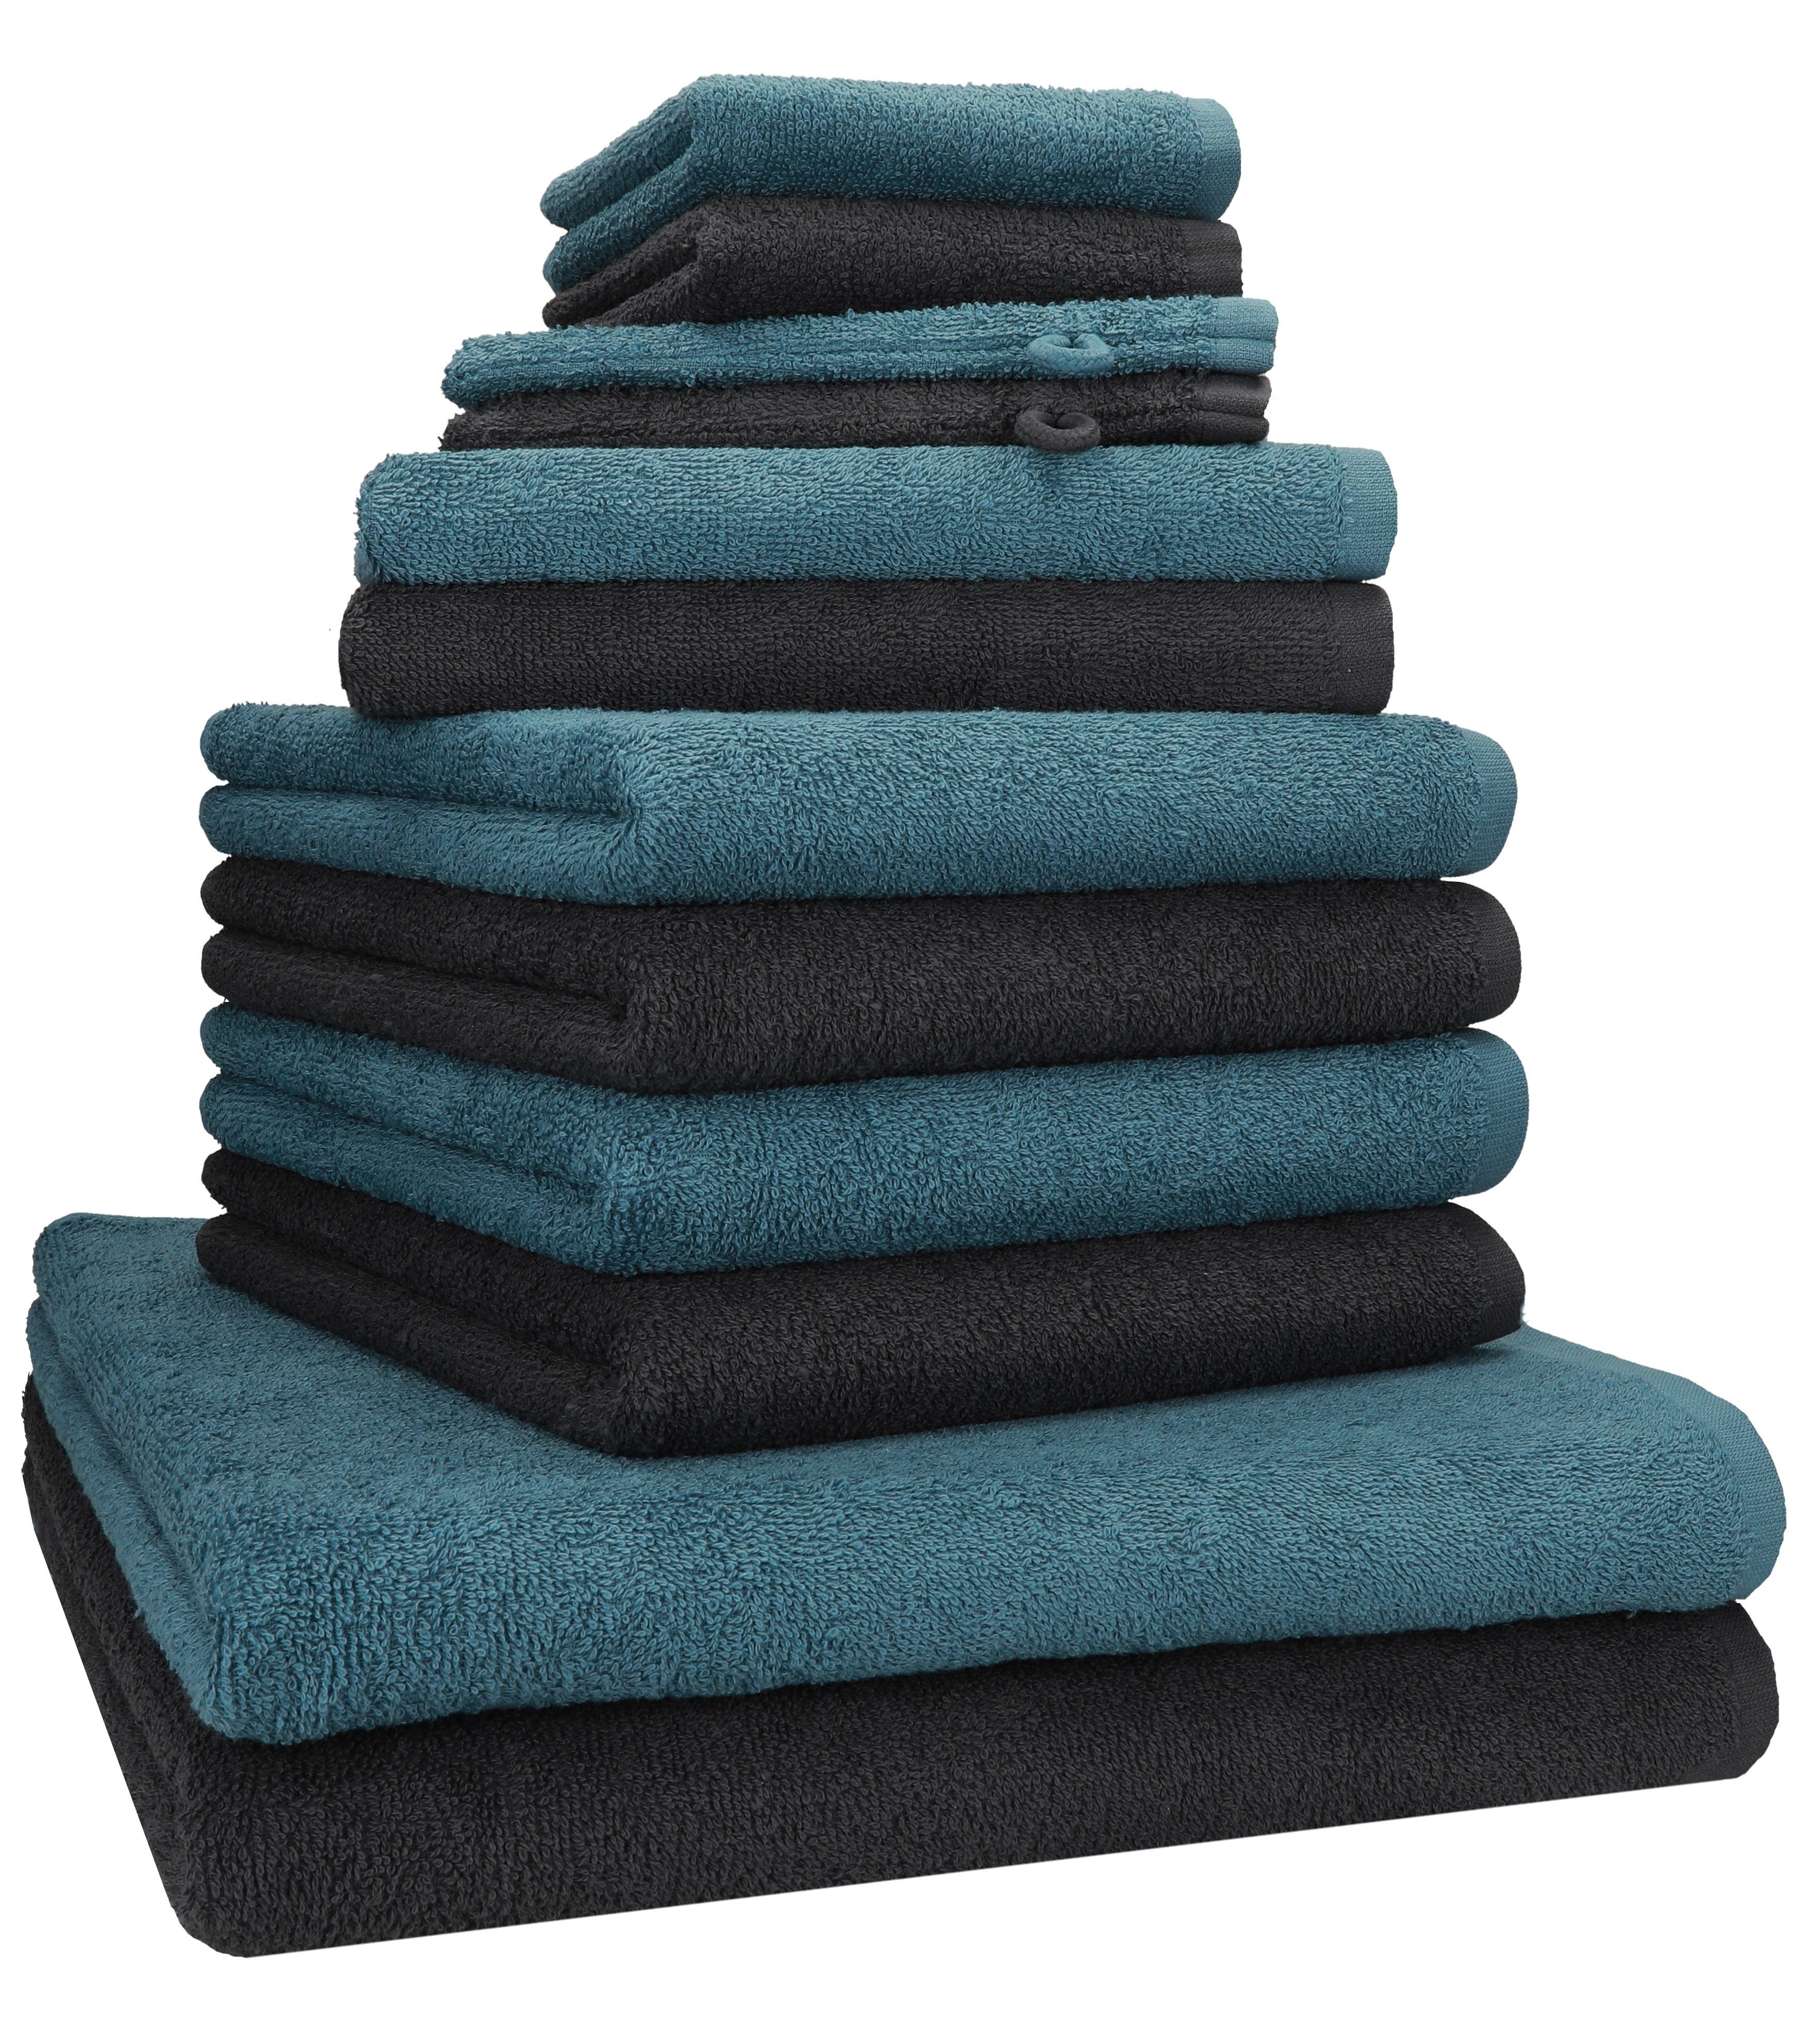 Betz Handtuch Set 12 TLG. taubenblau, Set BERLIN Baumwolle Farbe graphit - 100% Handtuch